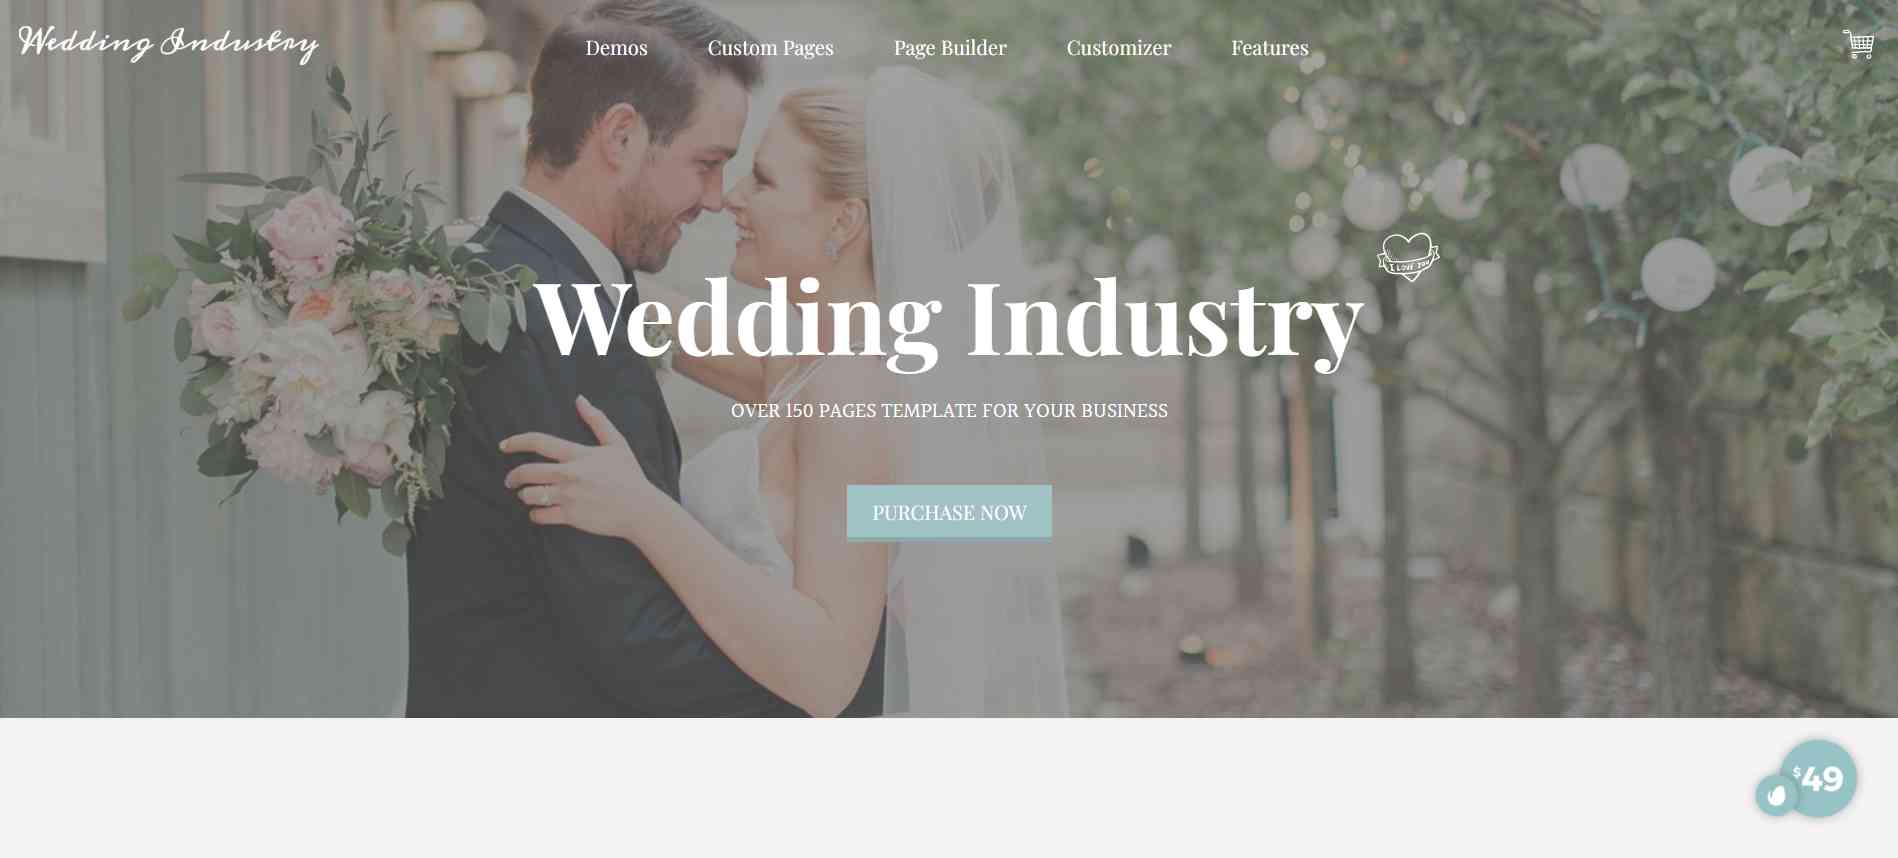 Wedding Industry - WordPress theme